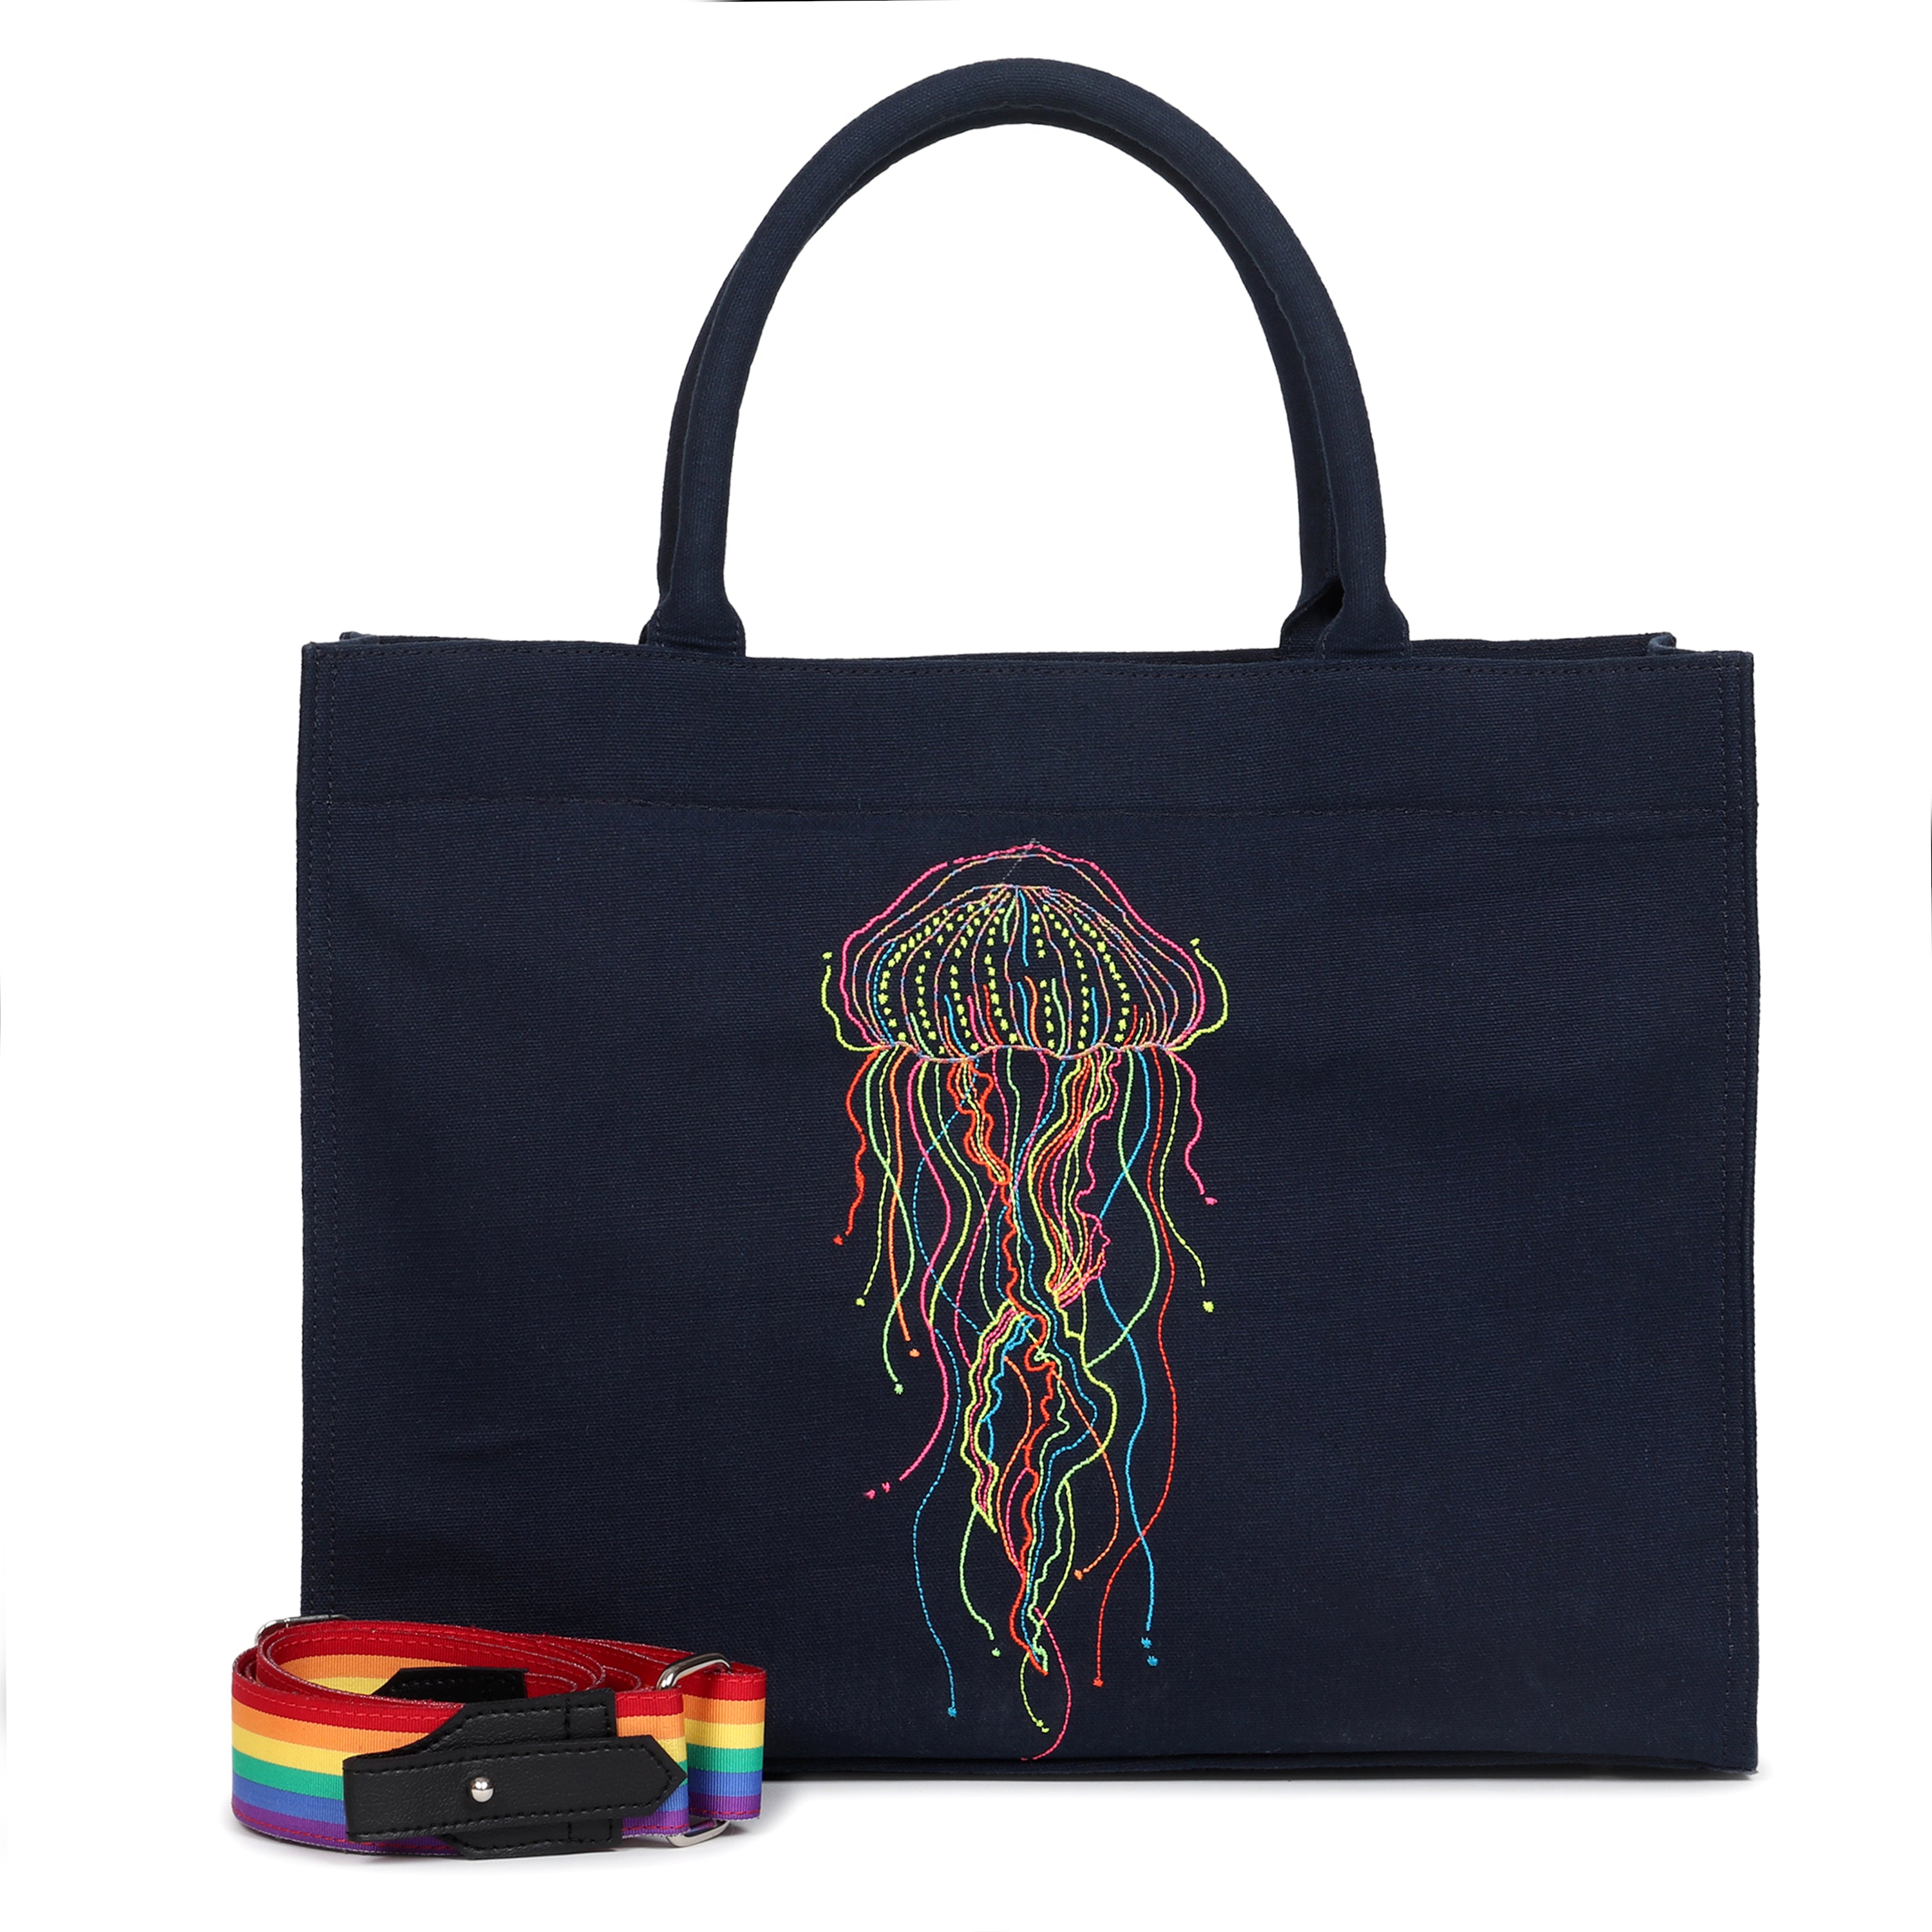 Jellyfish handbag - Large